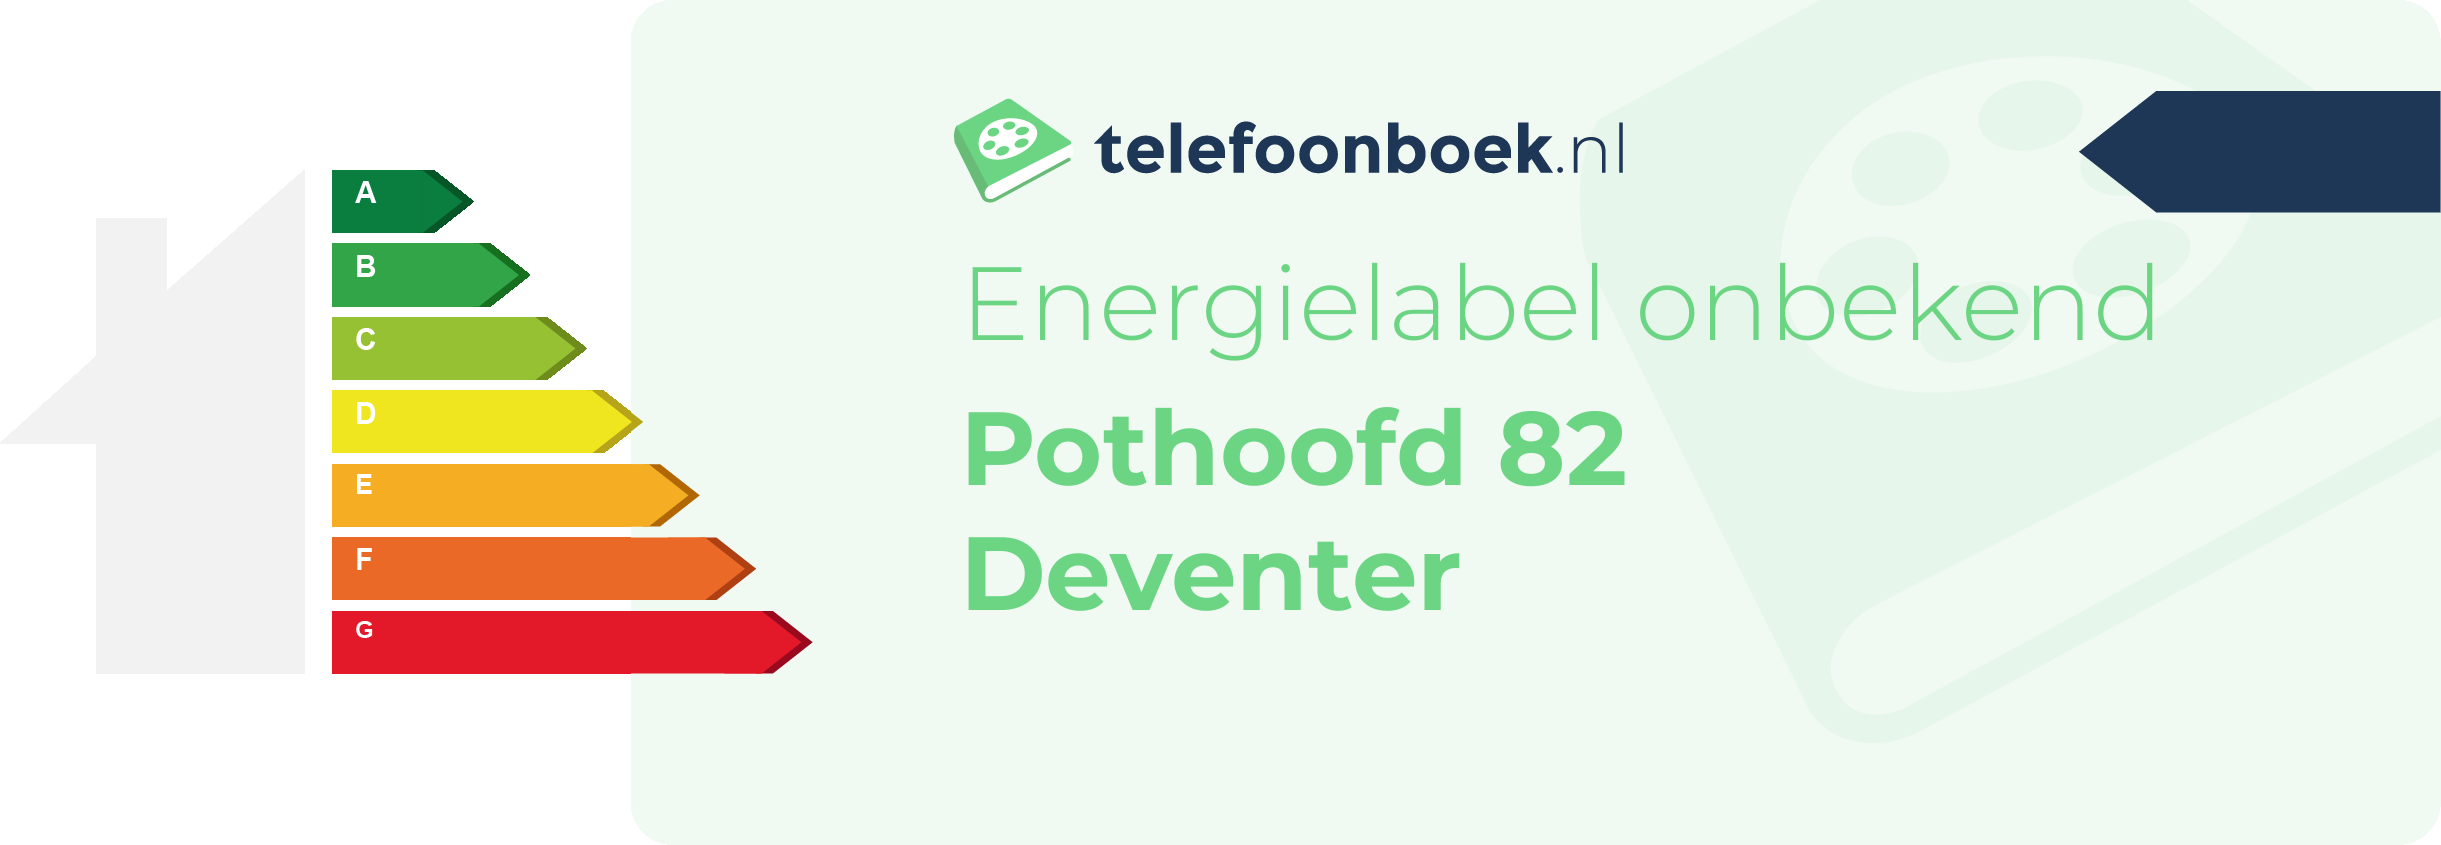 Energielabel Pothoofd 82 Deventer